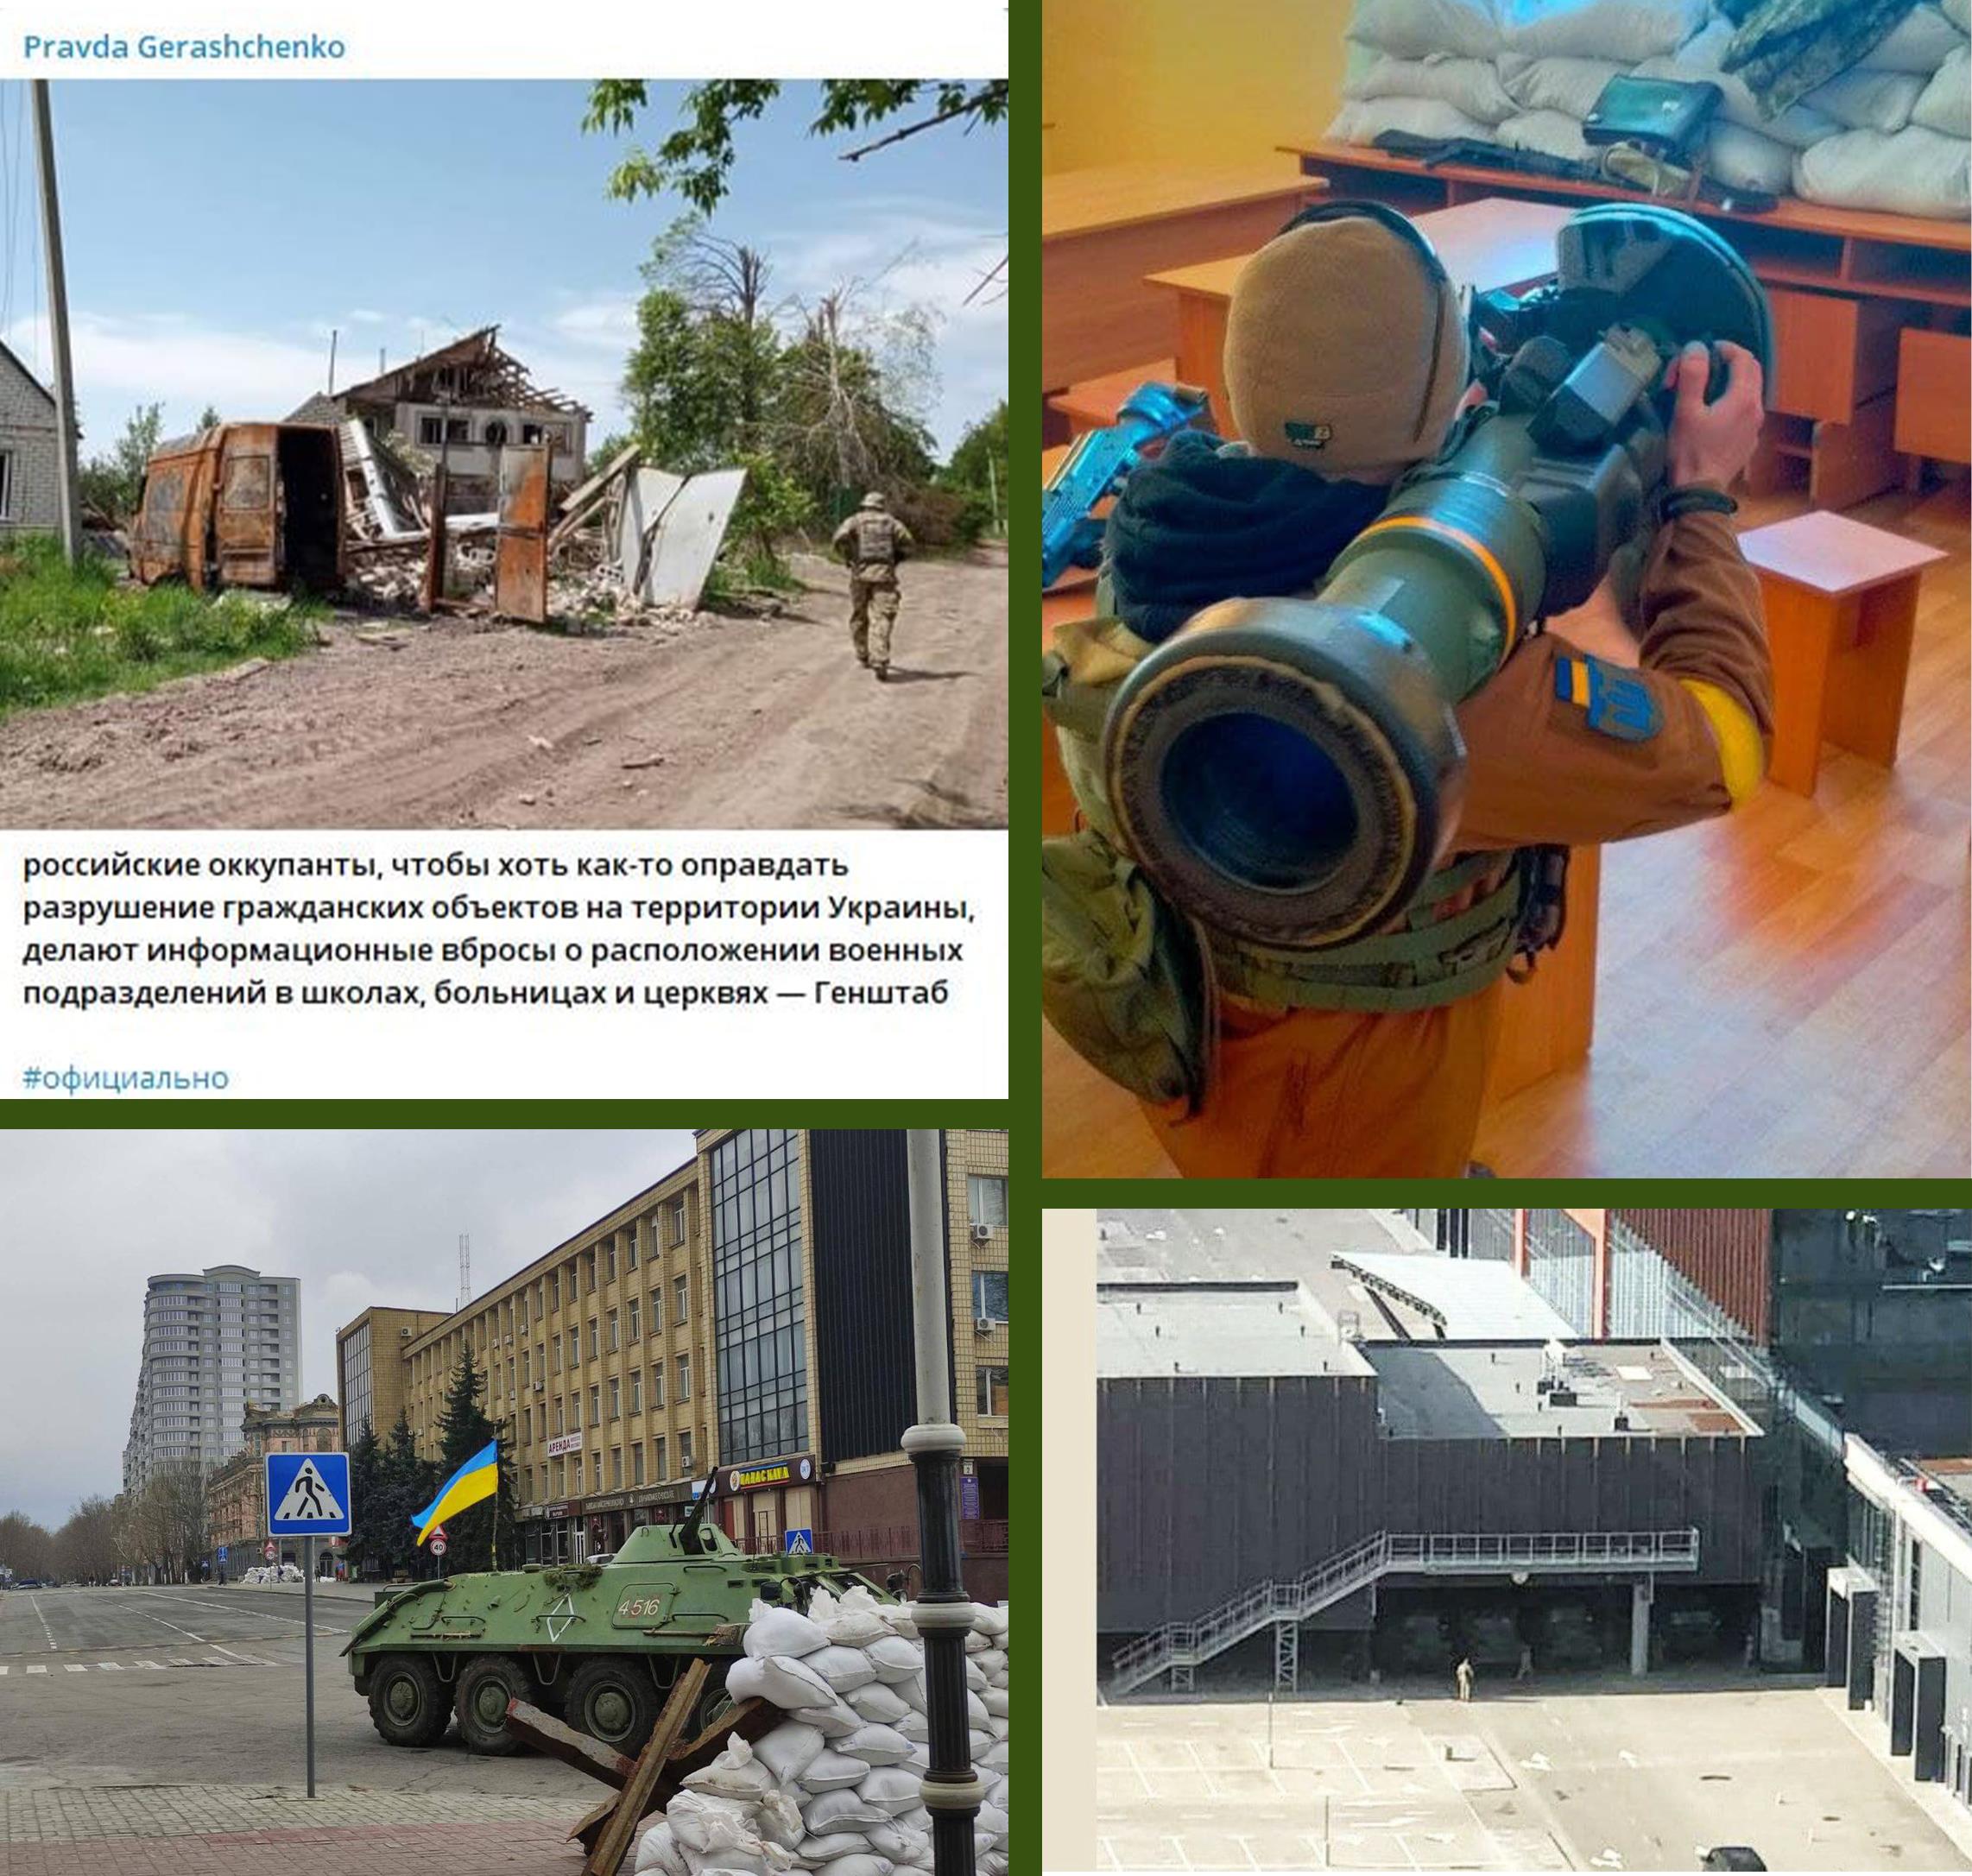 Генштаб ВСУ заявил, что украинская армия не размещает технику и войска в жилых кварталах